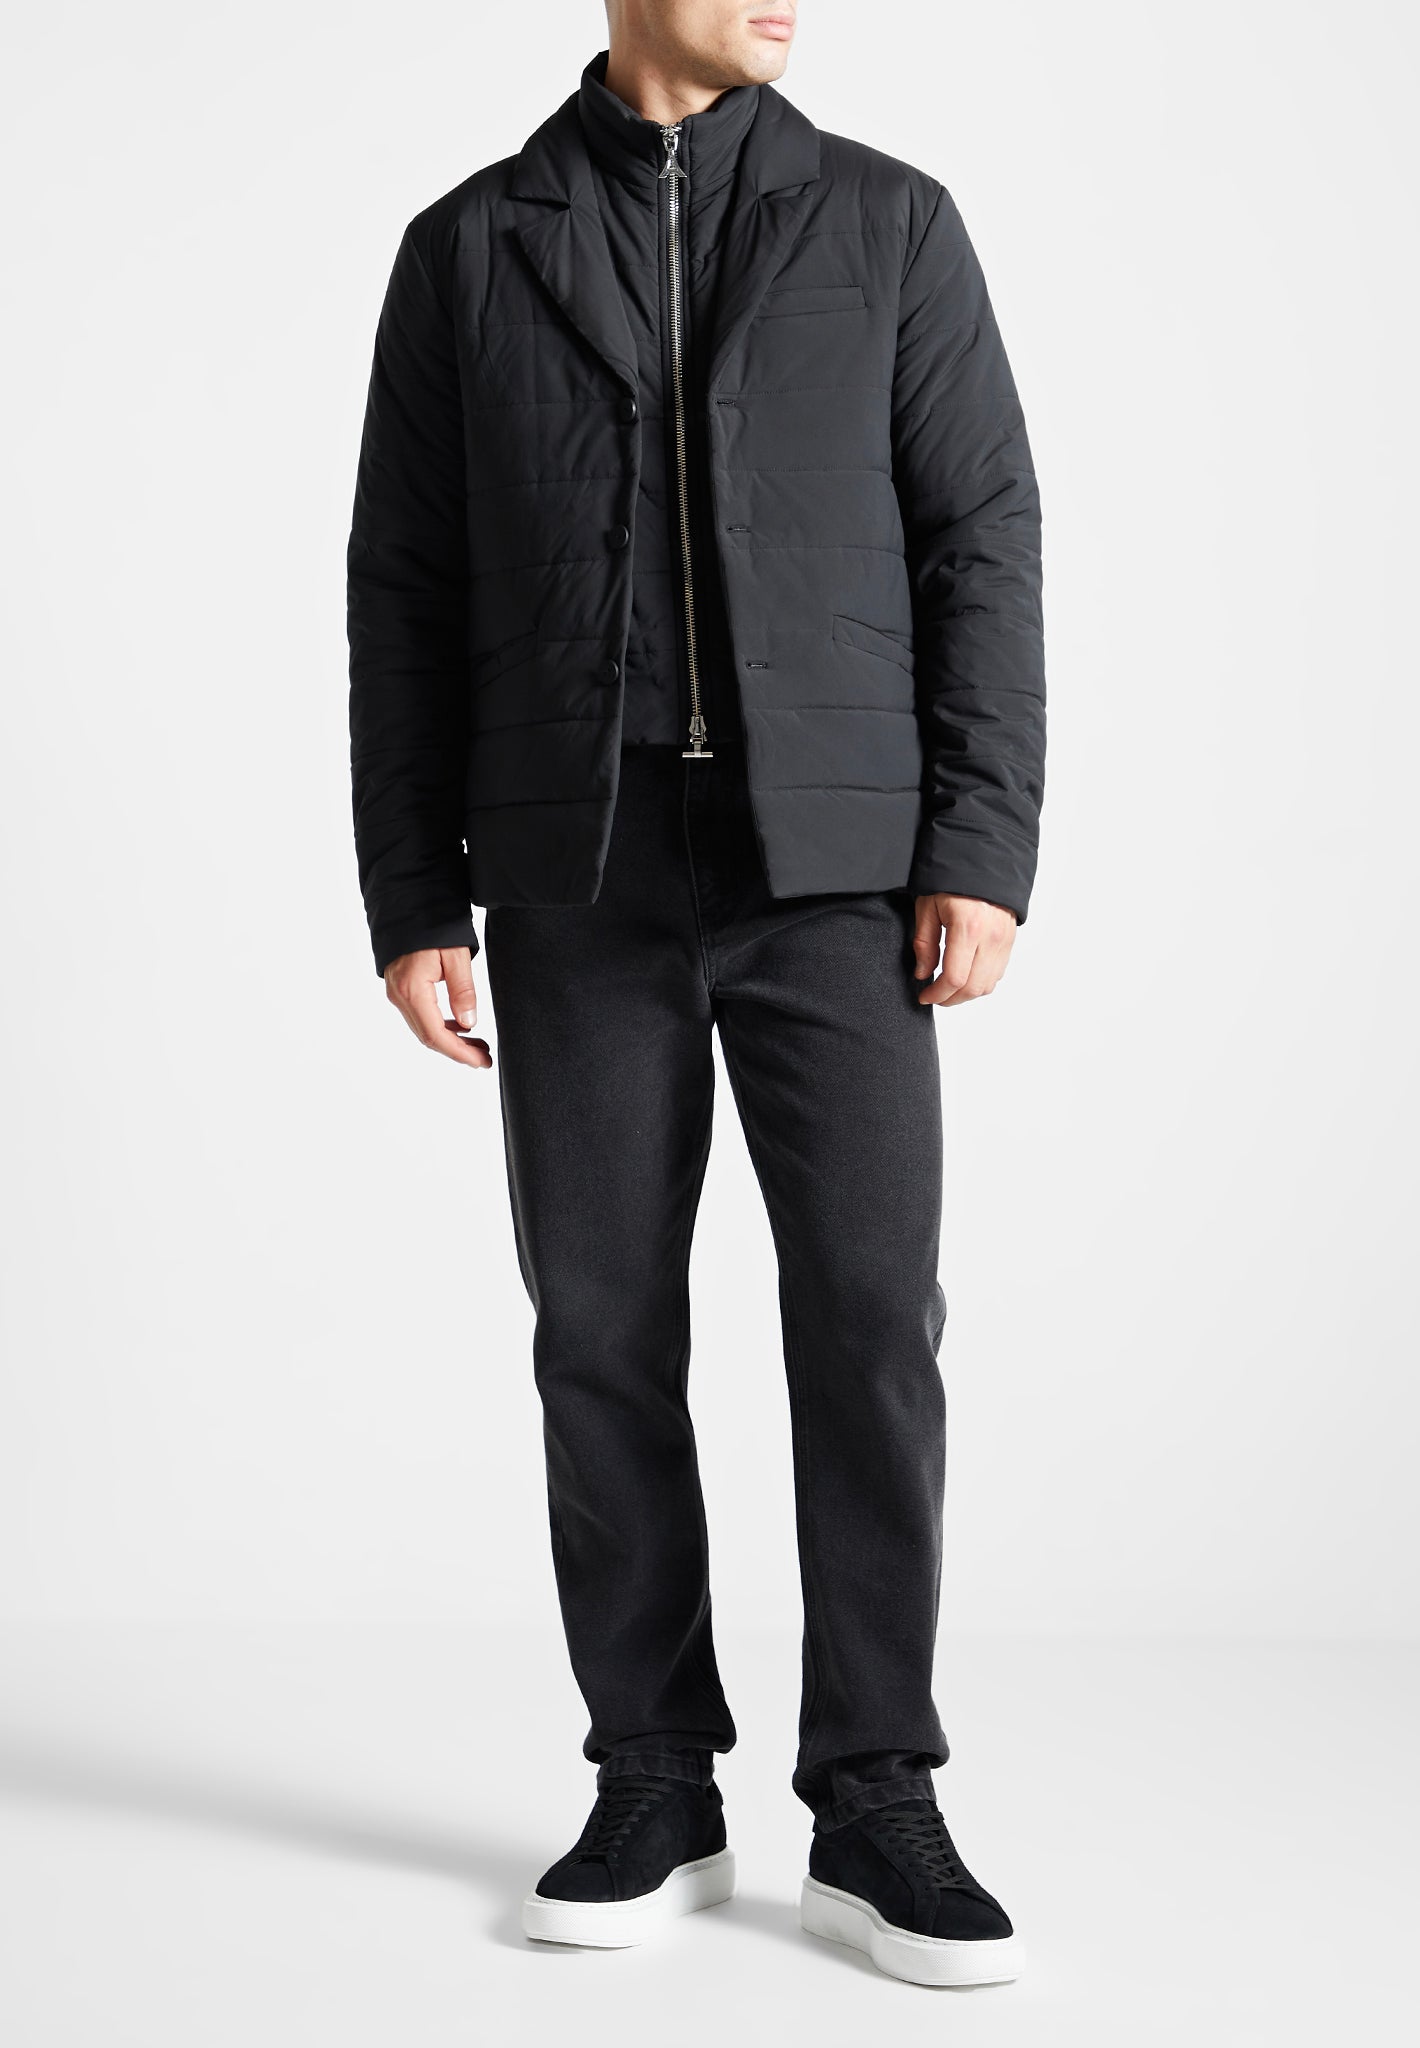 quilted-blazer-jacket-black